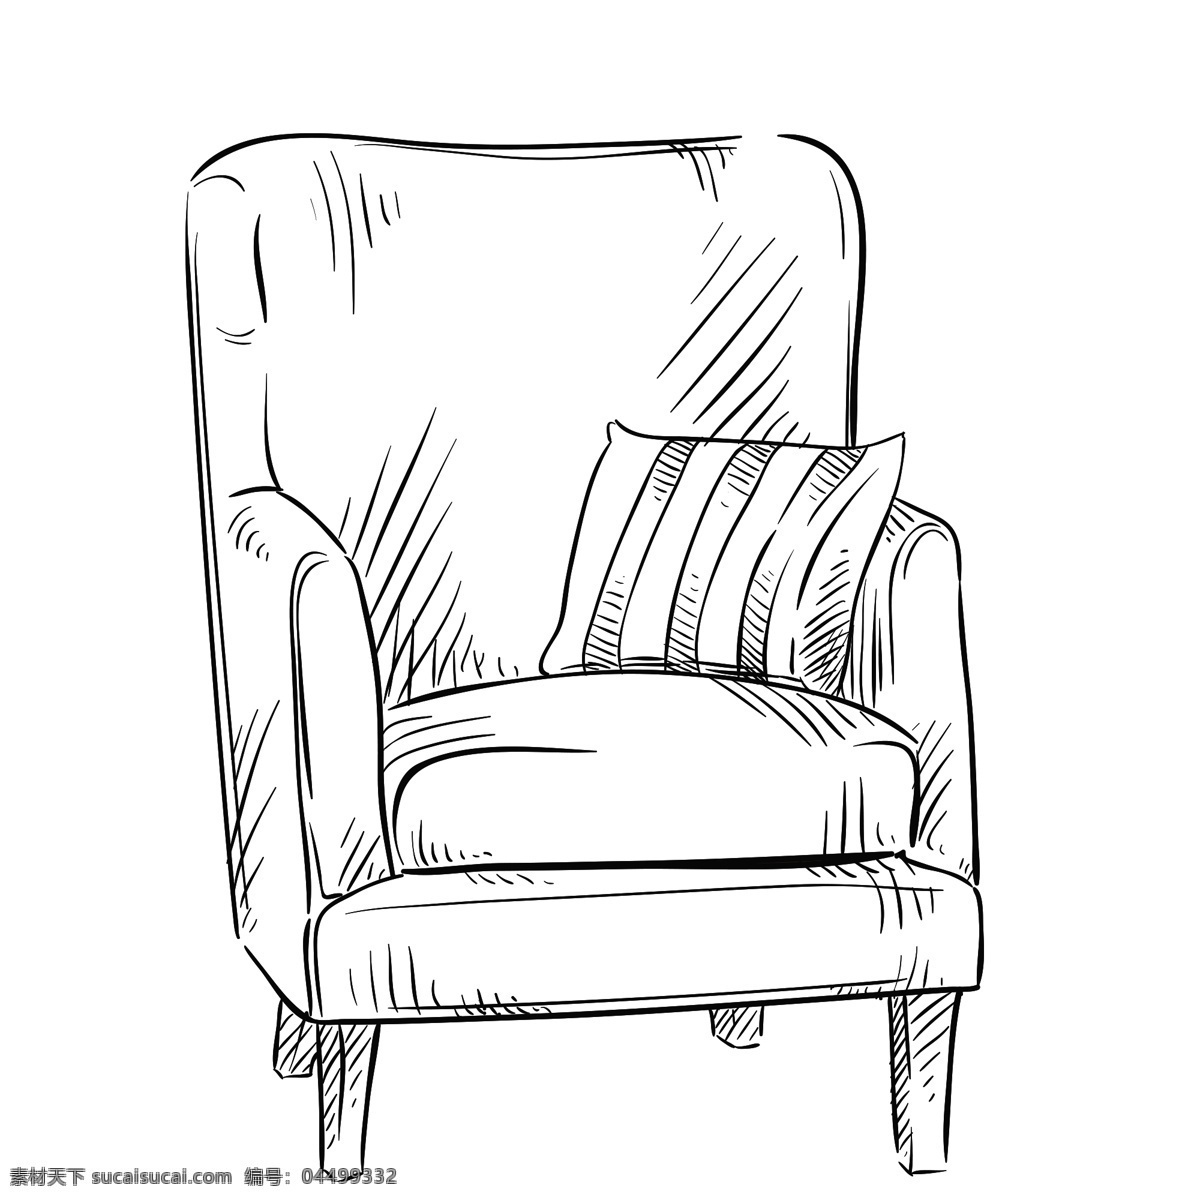 素描 家具 创意 黑白家具 矢量家具 涂鸦家具 矢量沙发 线描沙发 唯美线描 简约 黑白素描